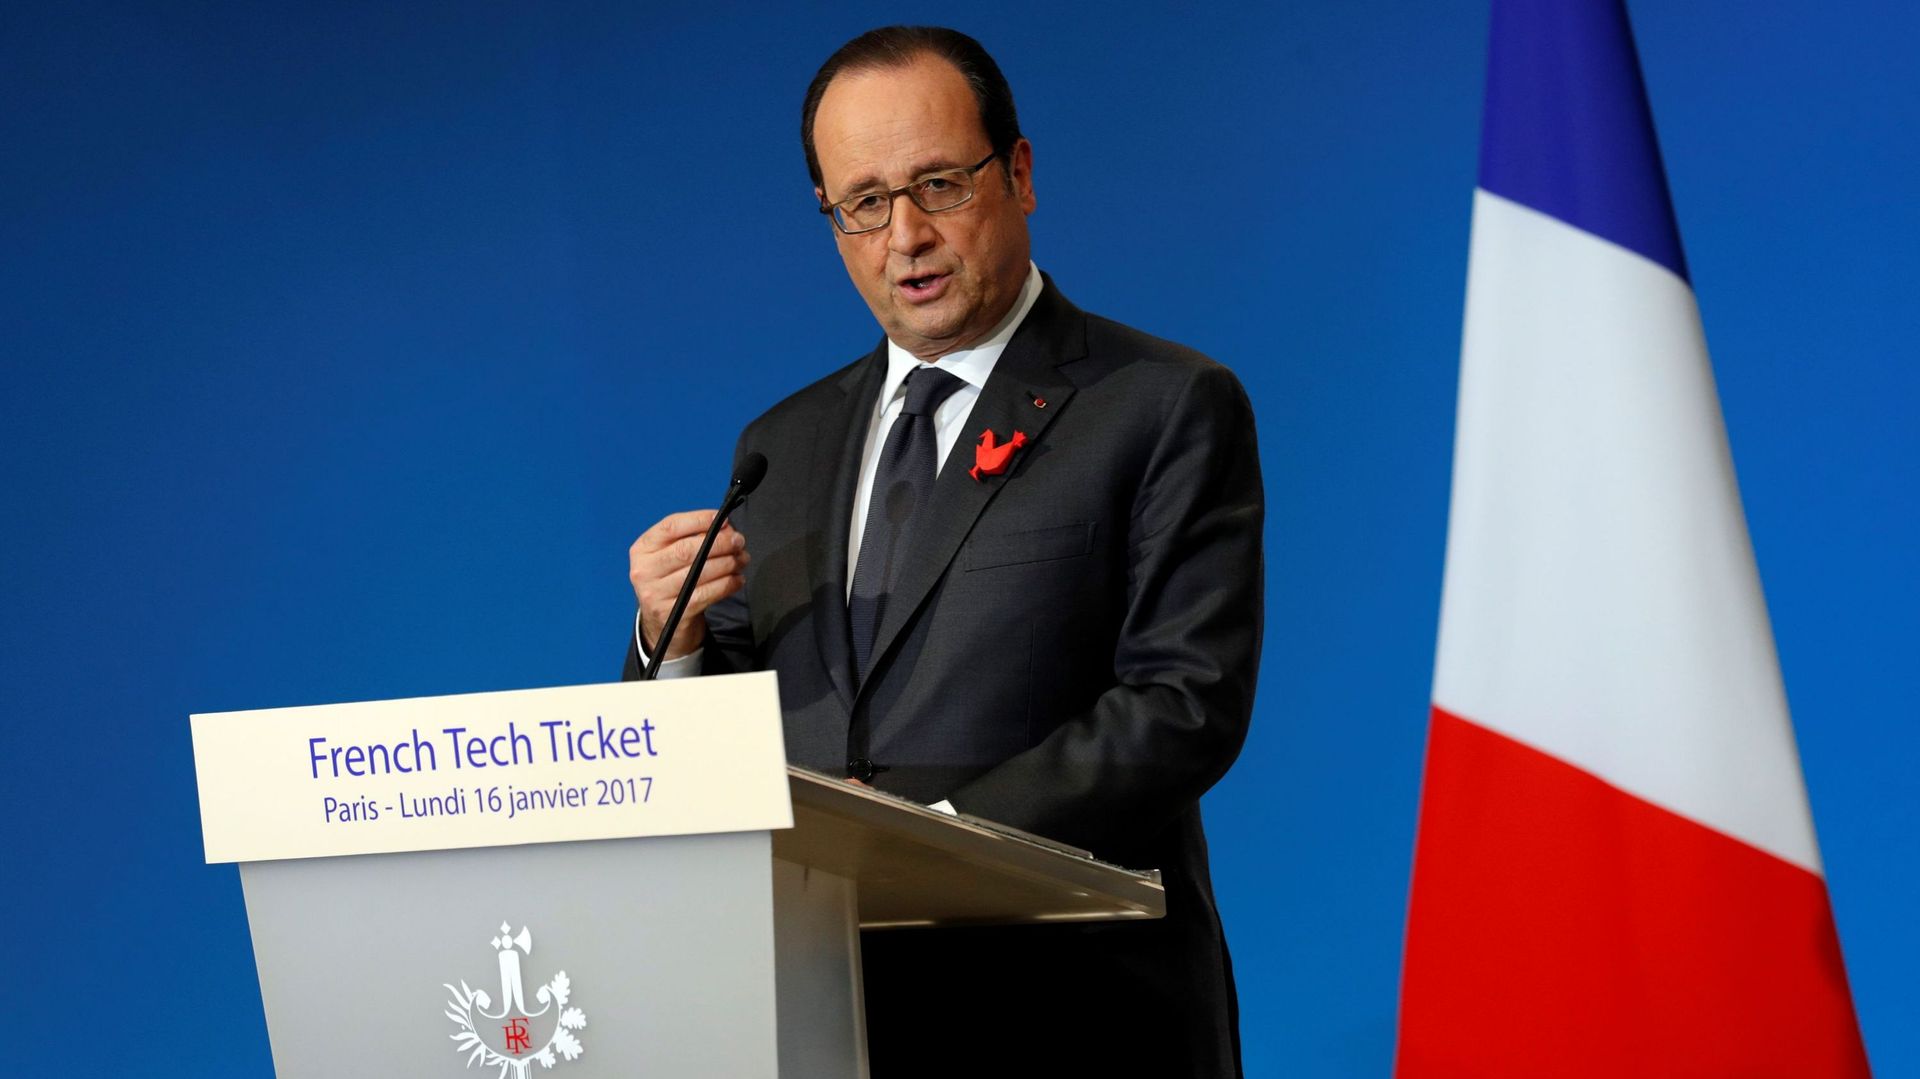 François Hollande répond à Donald Trump: l'UE "n'a pas besoin qu'on lui dise ce qu'elle a à faire"